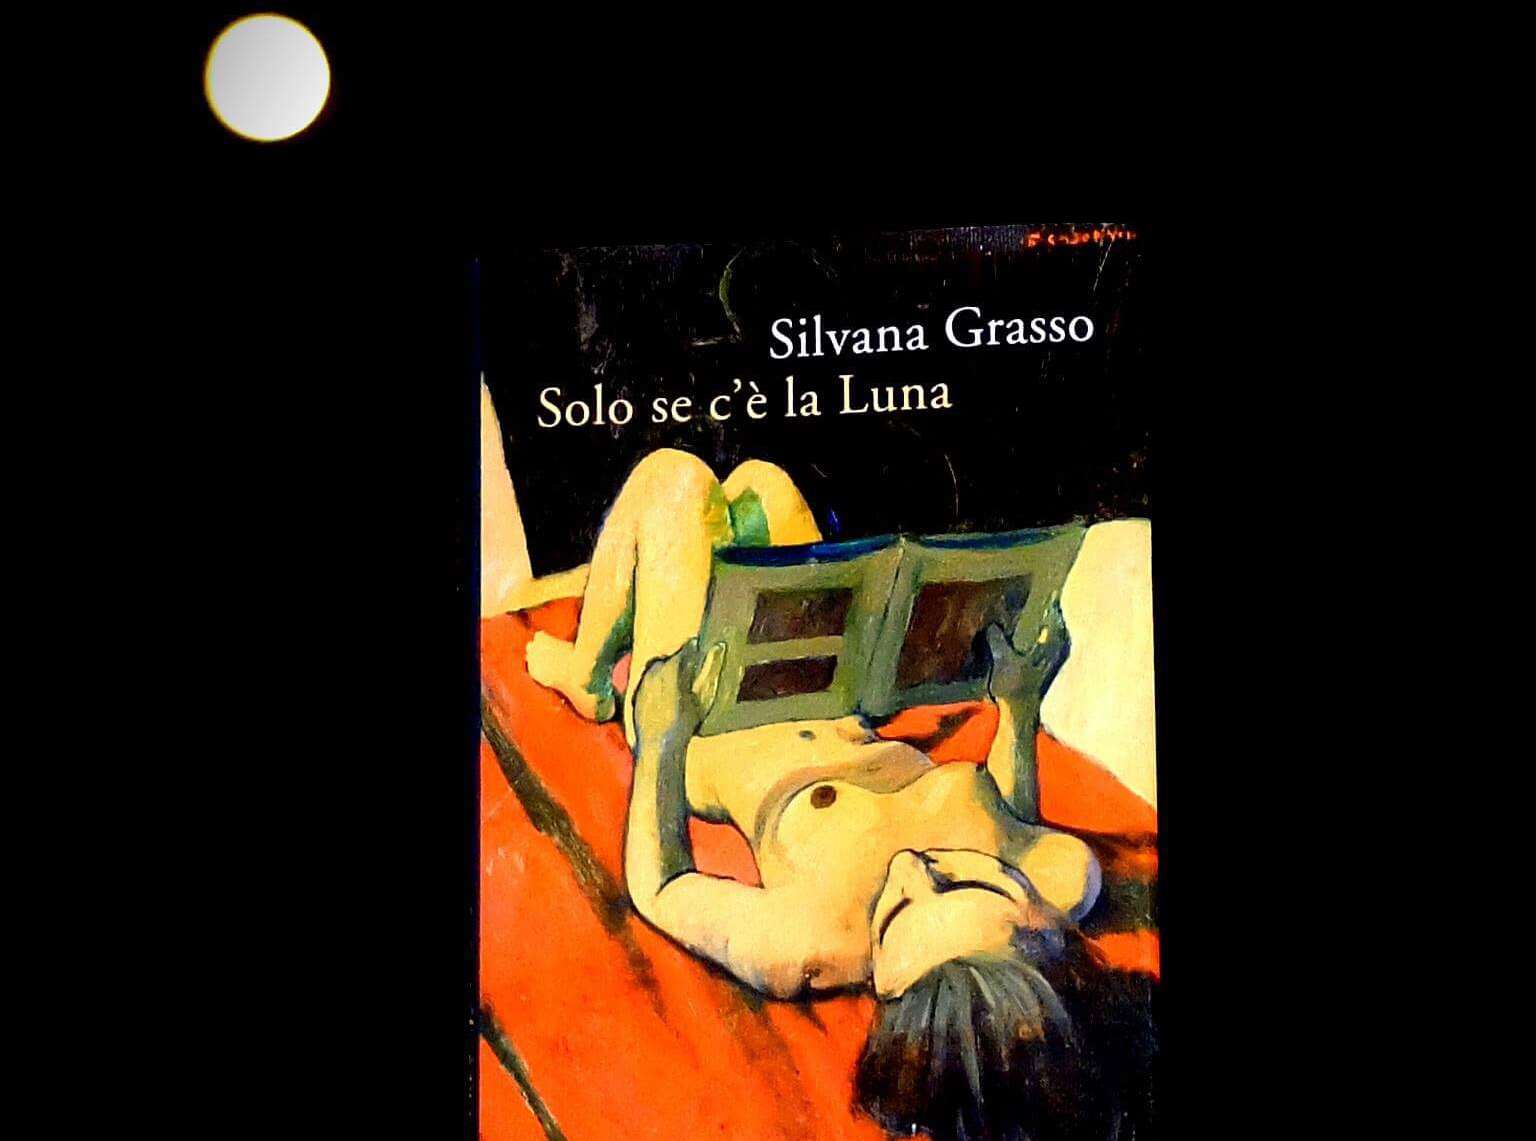  Mercoledì sera Silvana Grasso a Libri d’aMare: presenta “Solo se c’è la luna”